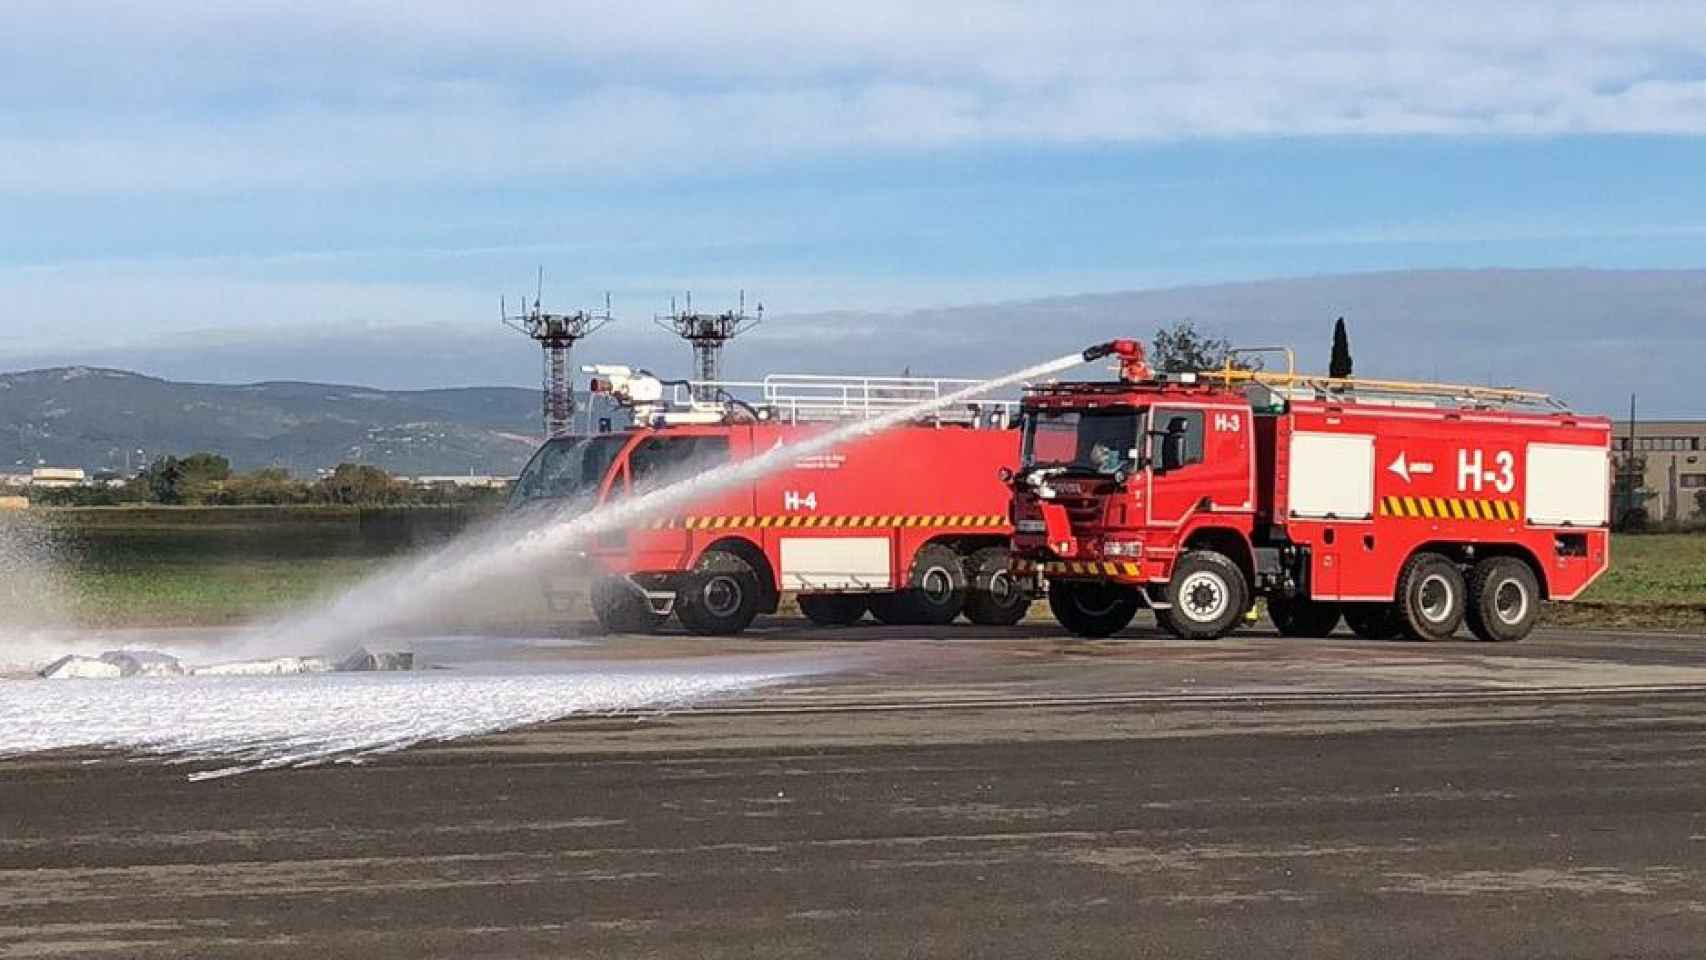 Los bomberos trabajando durante el simulacro realizado en el aeropuerto de Reus / AENA